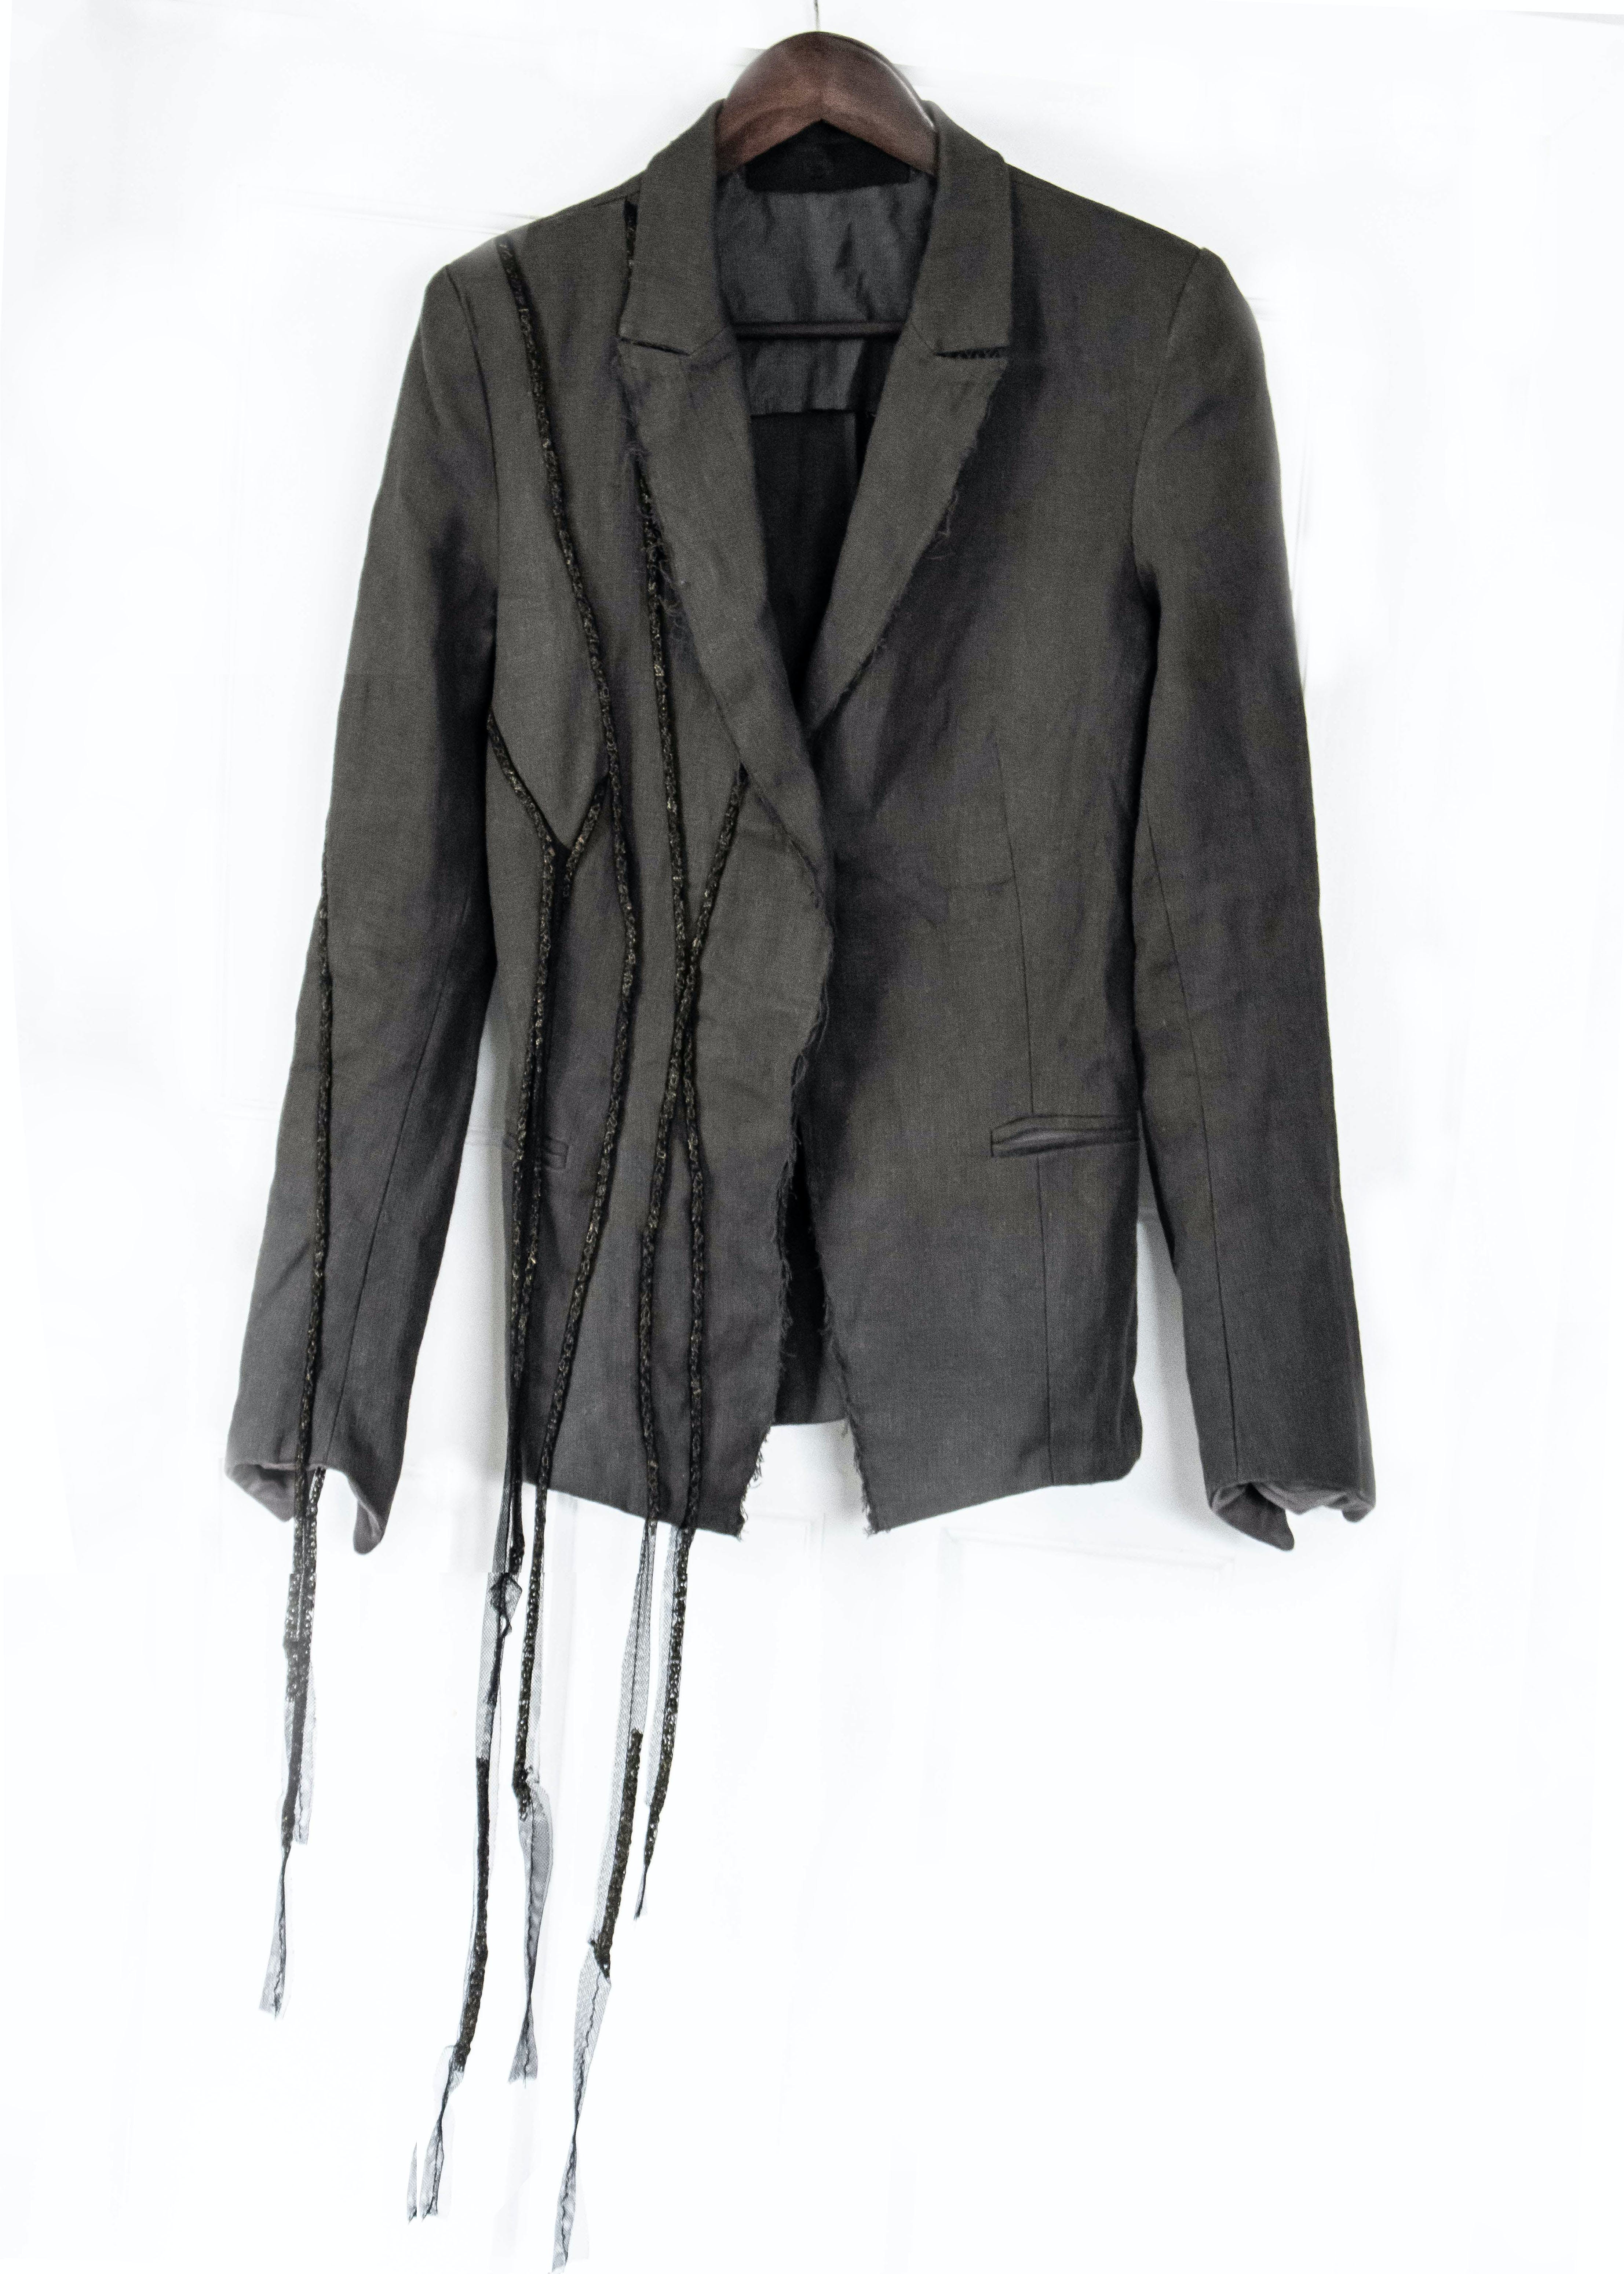 Cotton/Linen Chain Detail Jacket - 1